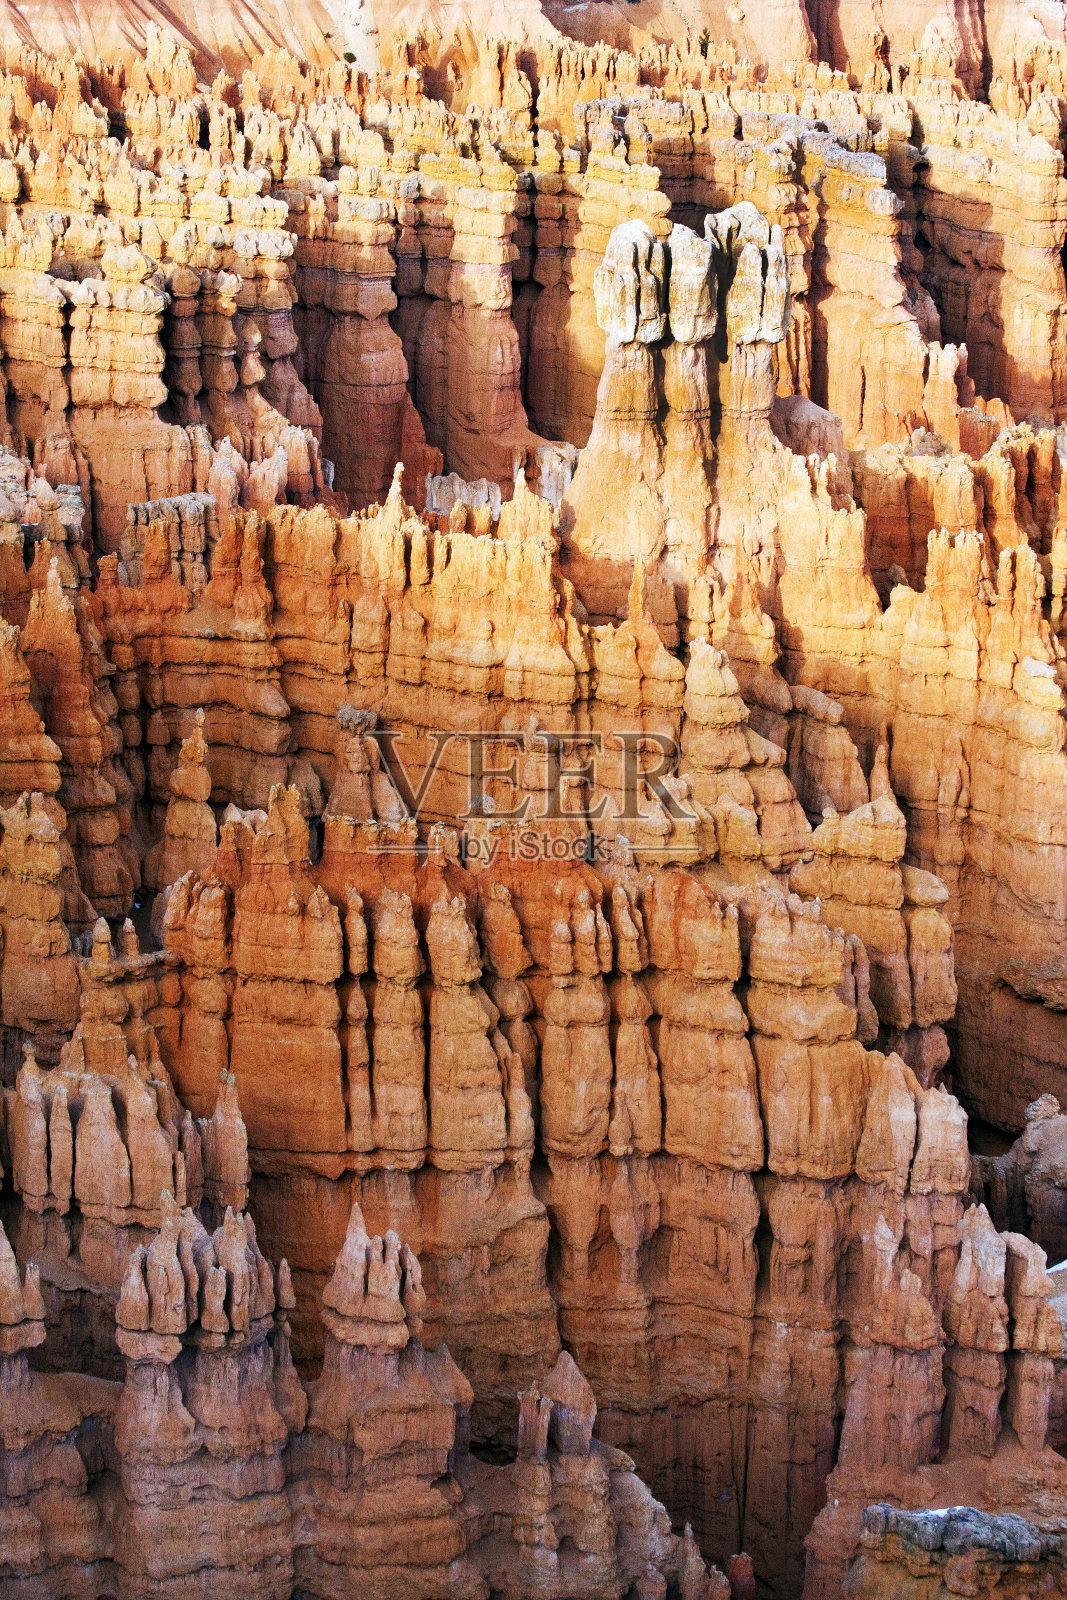 犹他州布莱斯峡谷国家公园的呼杜鸟照片摄影图片